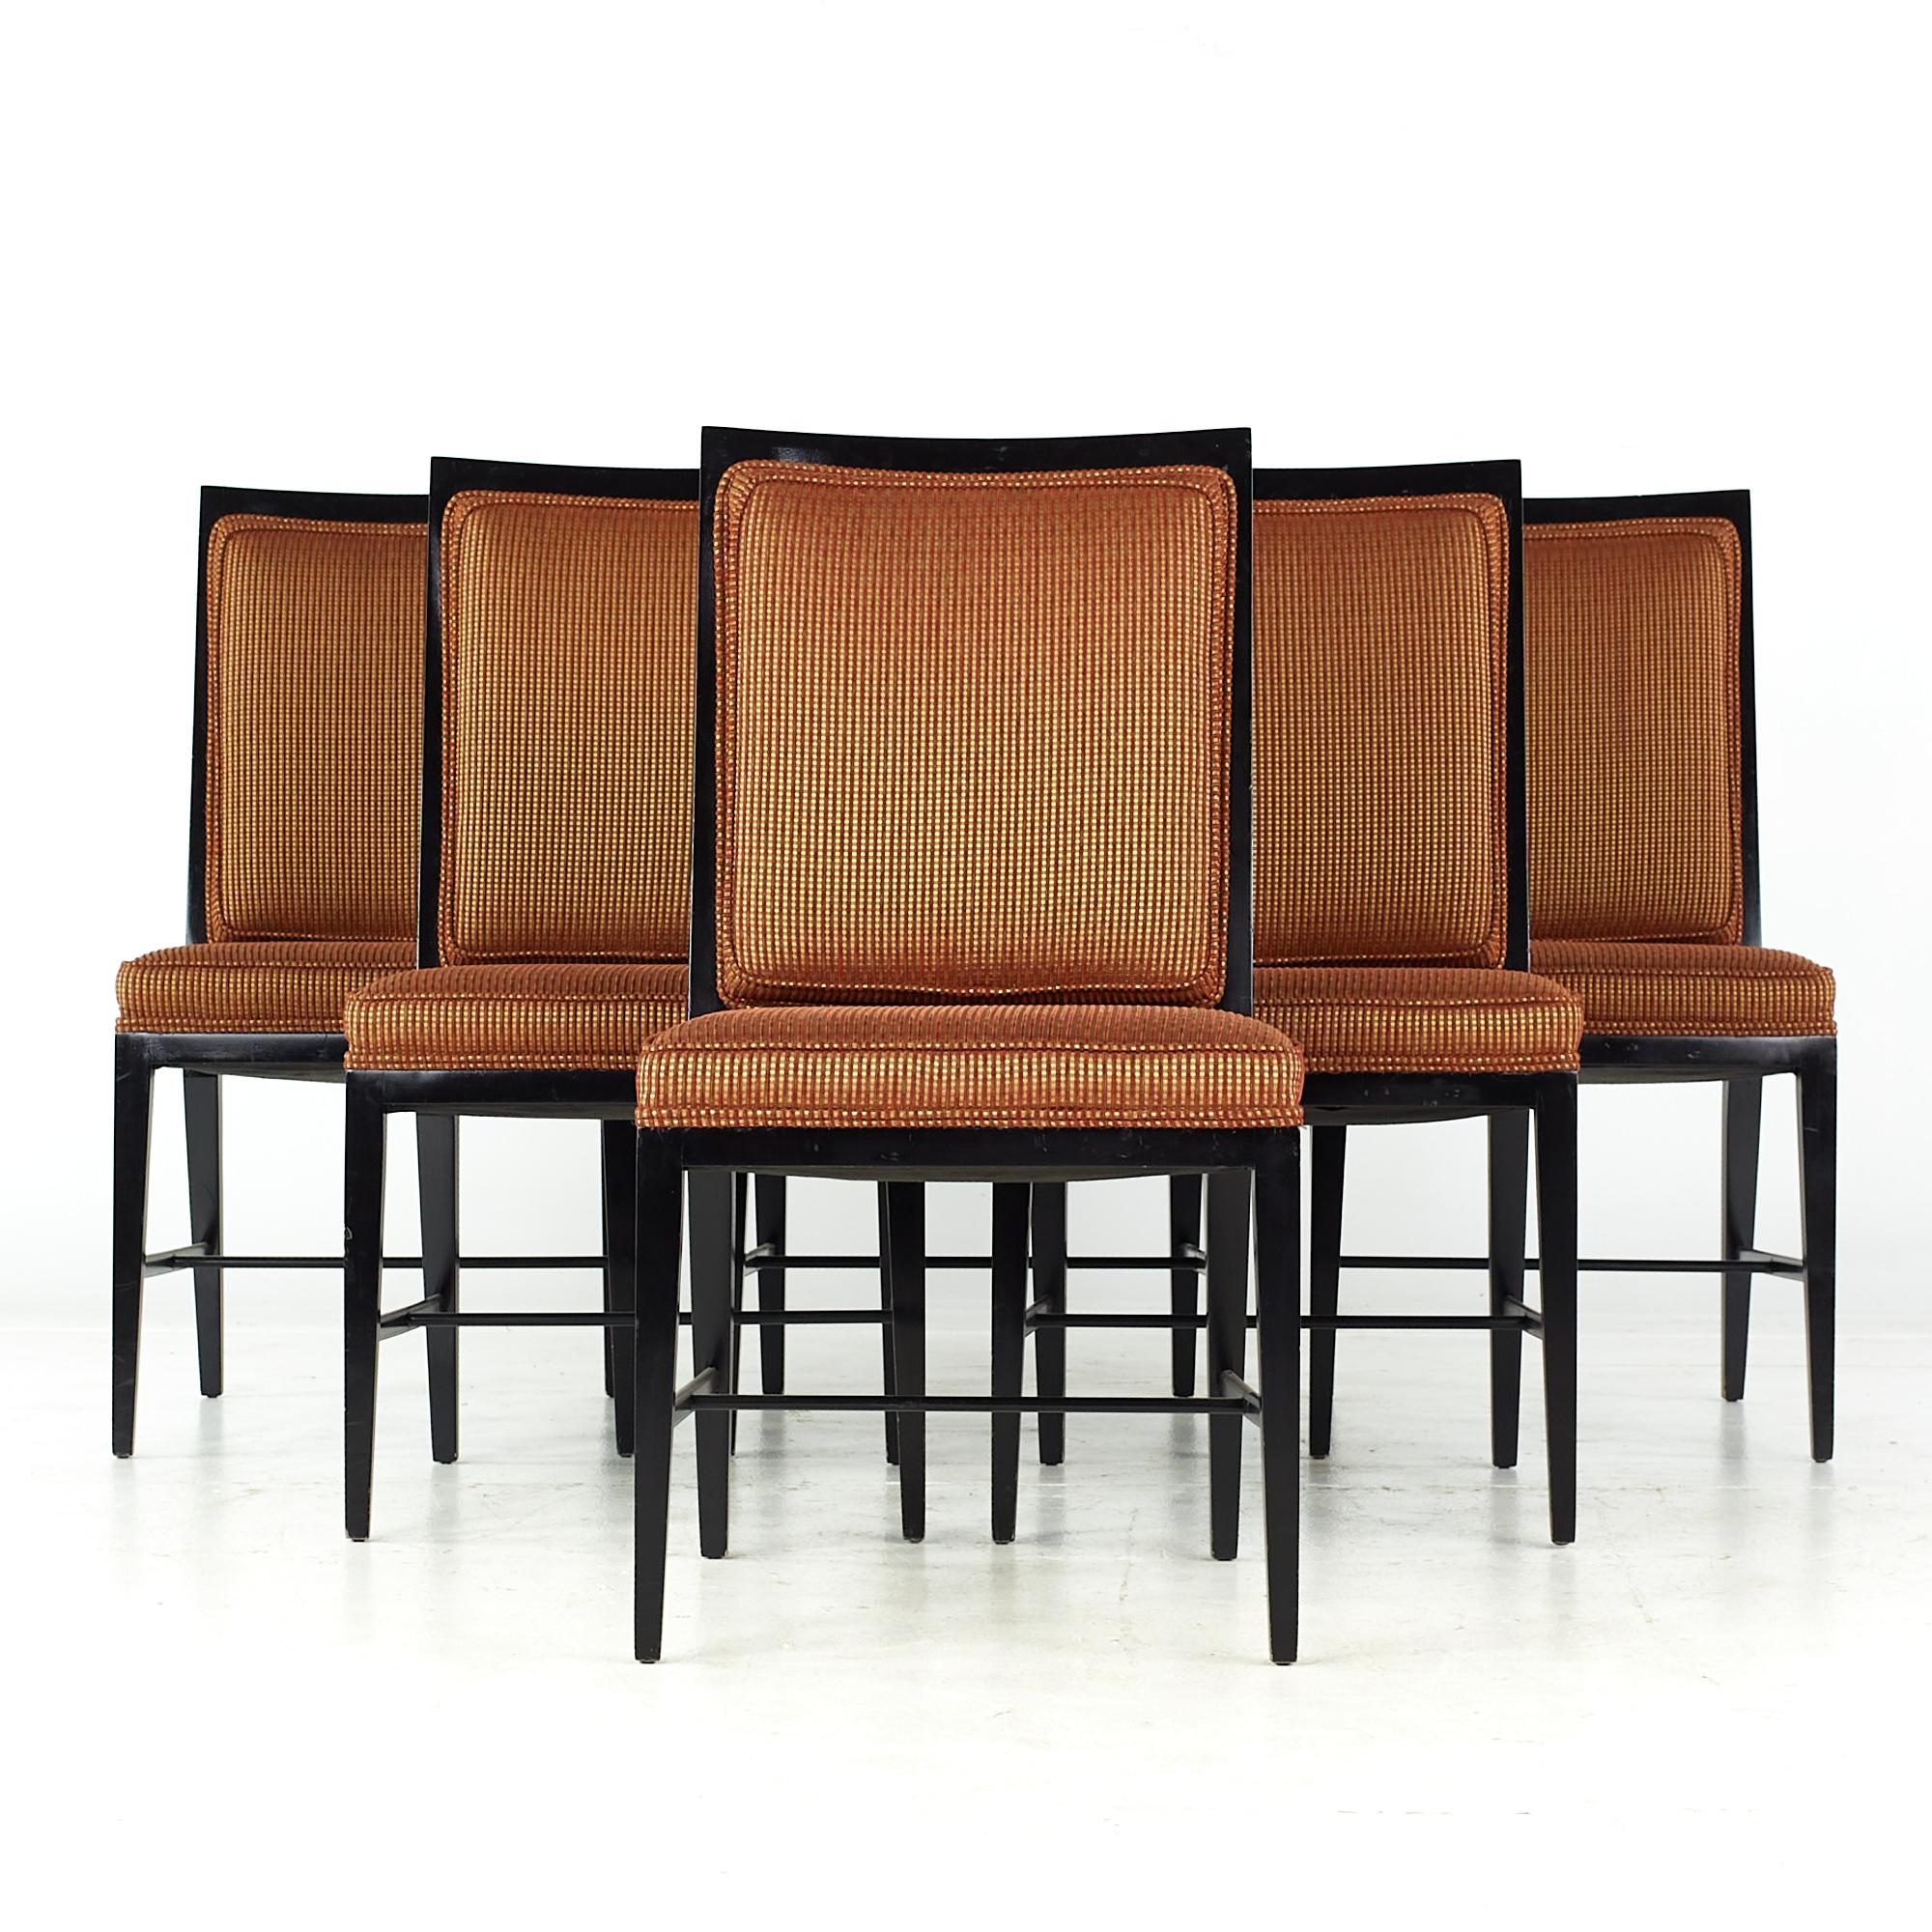 Chaises de salle à manger mi-siècle en ébène de style Paul McCobb - Lot de 6

Chaque chaise mesure : Largeur de 19 x profondeur de 21,25 x hauteur de 36 pouces, avec une hauteur d'assise et un dégagement de 18 pouces.

Tous les meubles peuvent être